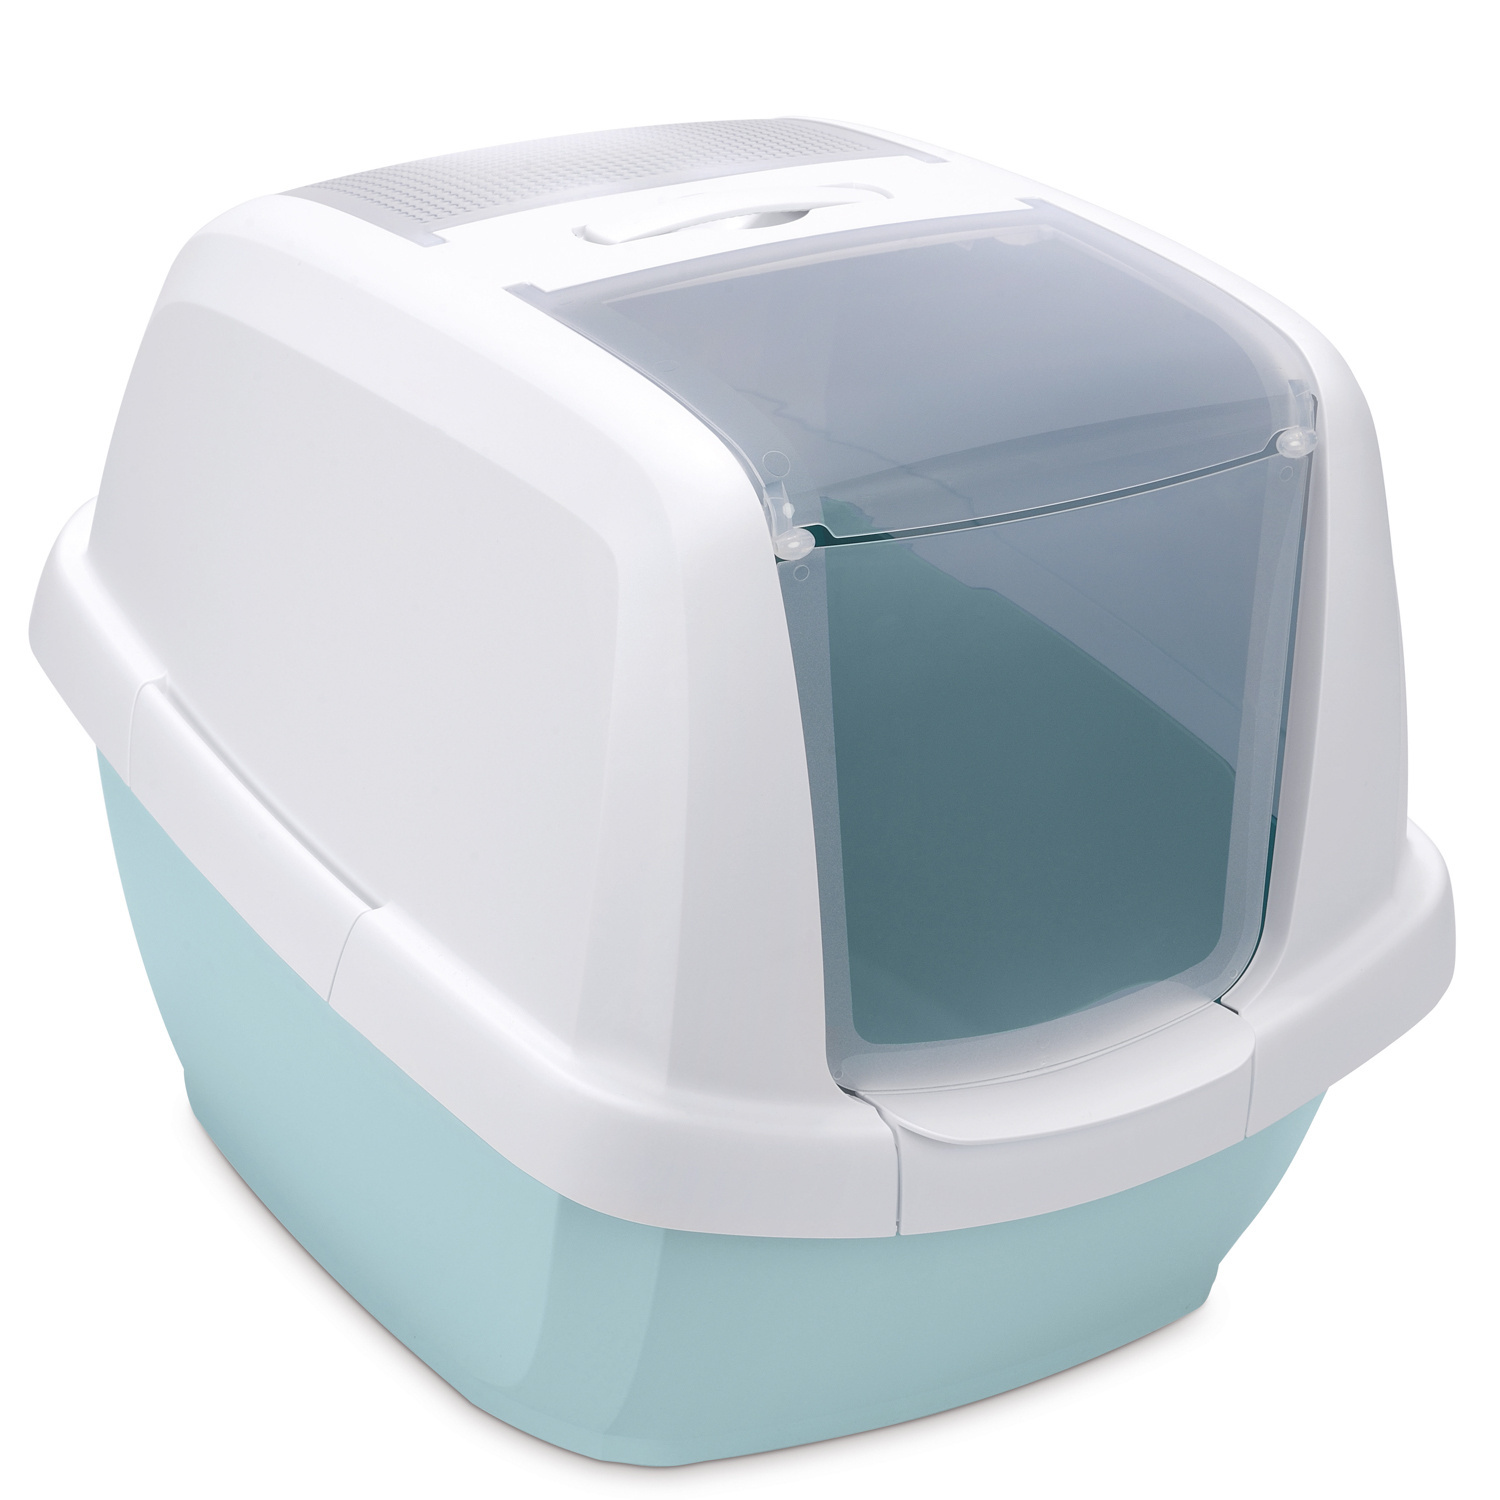 IMAC IMAC био-туалет для кошек , белый/цвет морской волны (2,85 кг) imac imac био туалет для кошек белый нежно розовый 2 85 кг